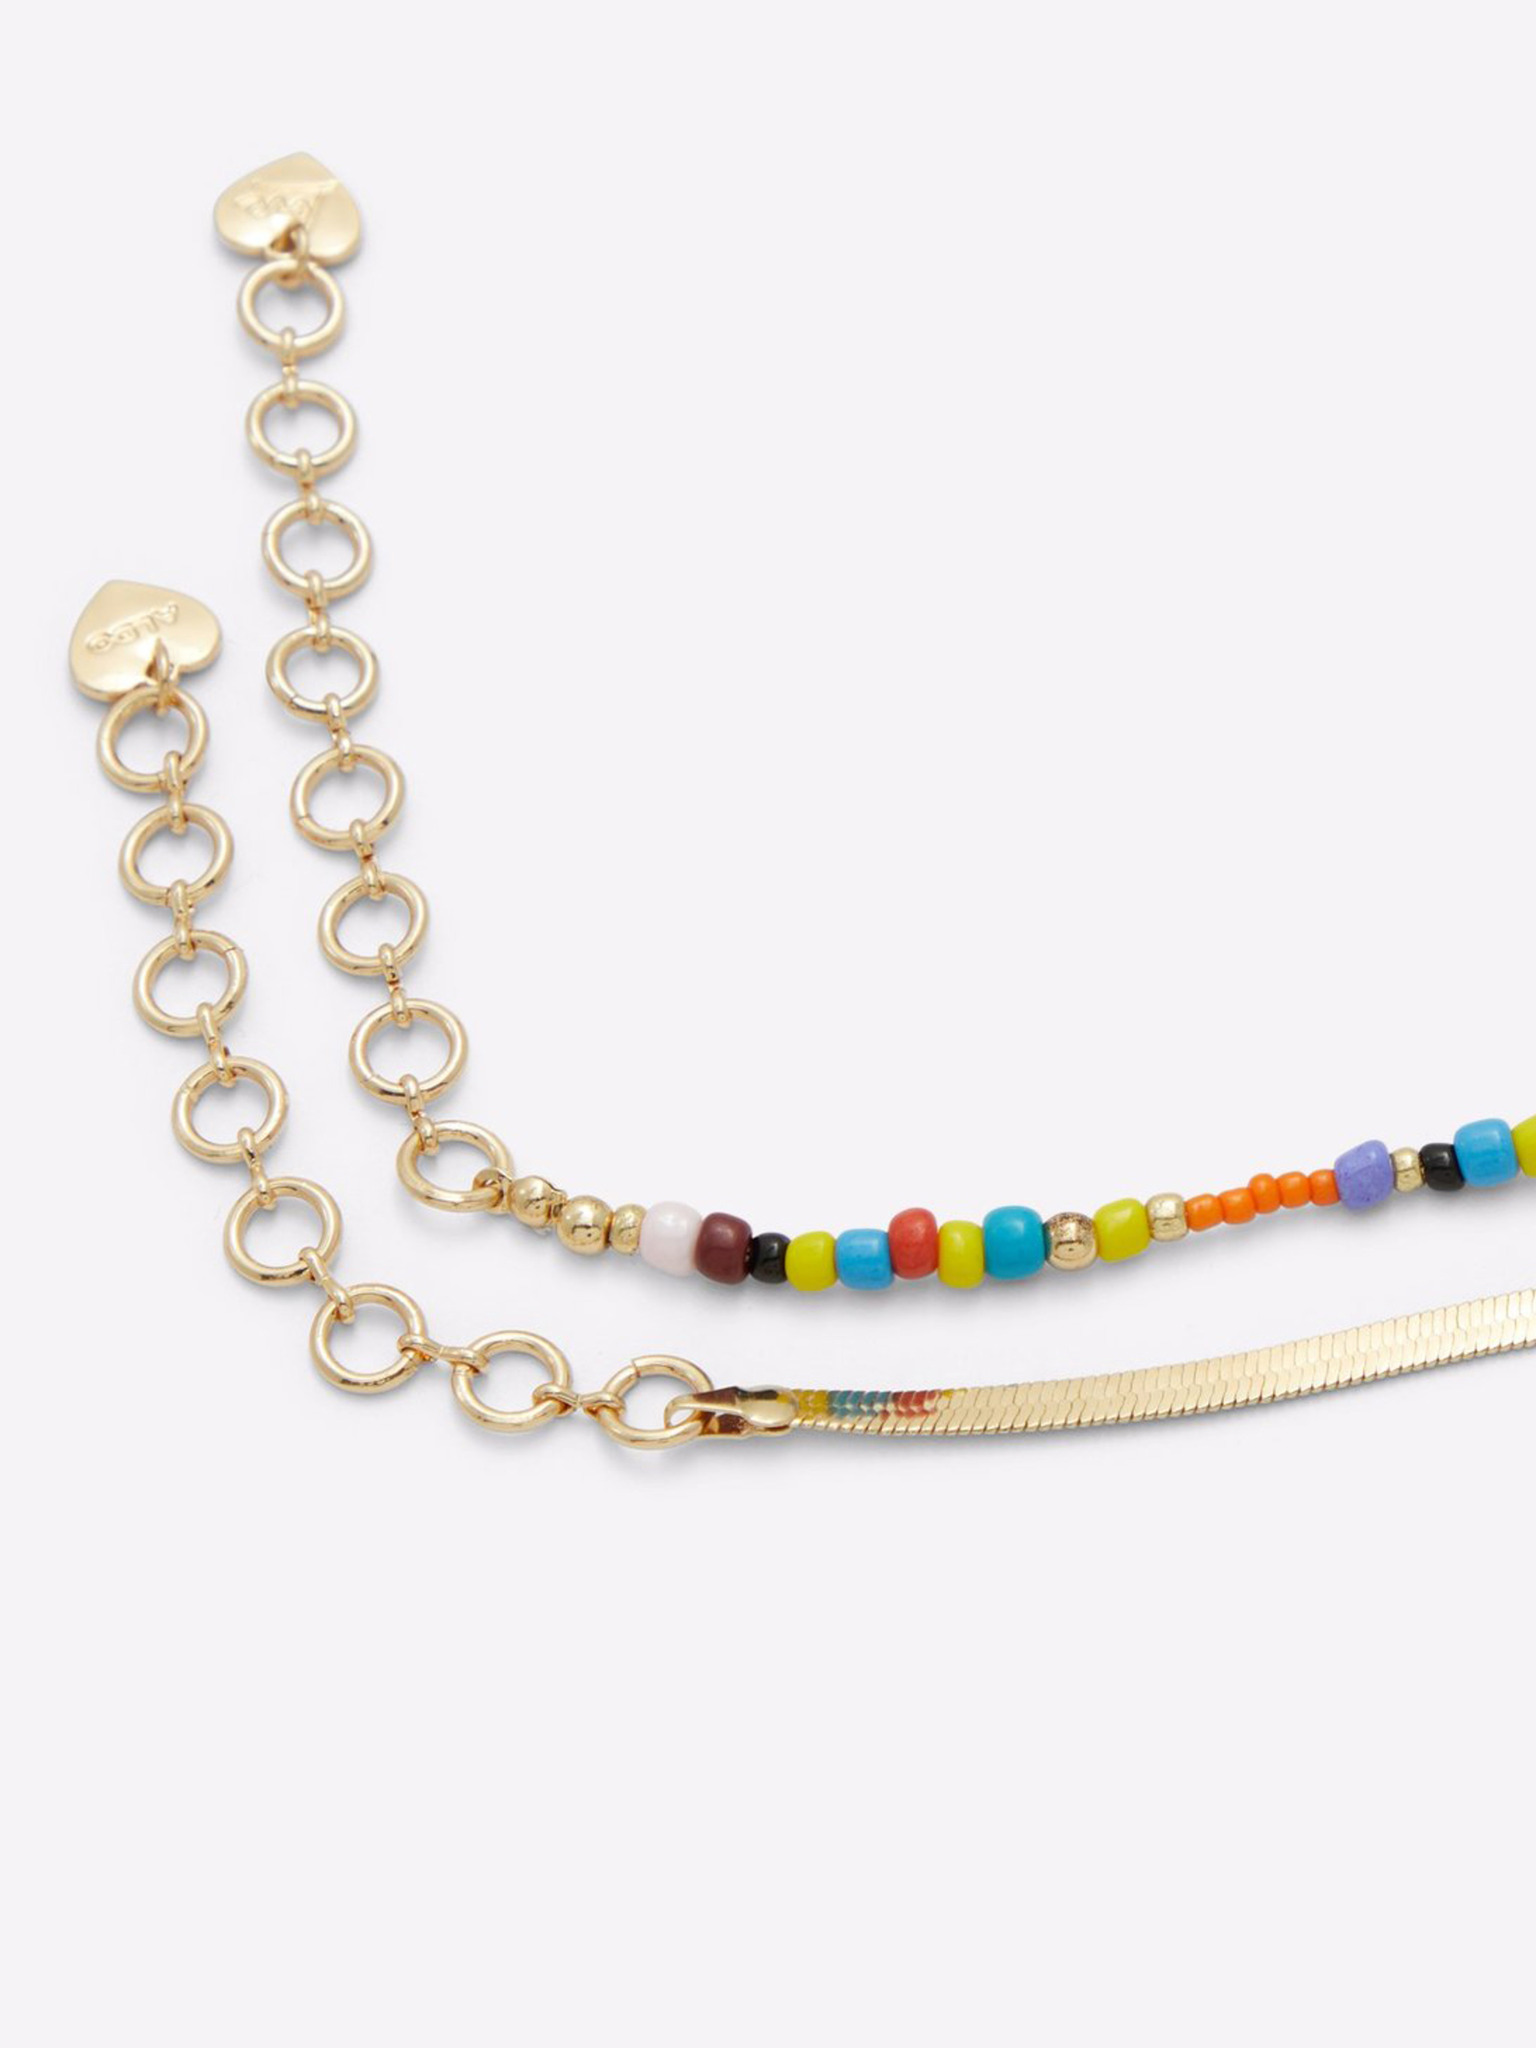 Vintage Jewelry Lot Necklaces Bracelets Silver Tone Statement VCLM KCR ALDO  | eBay